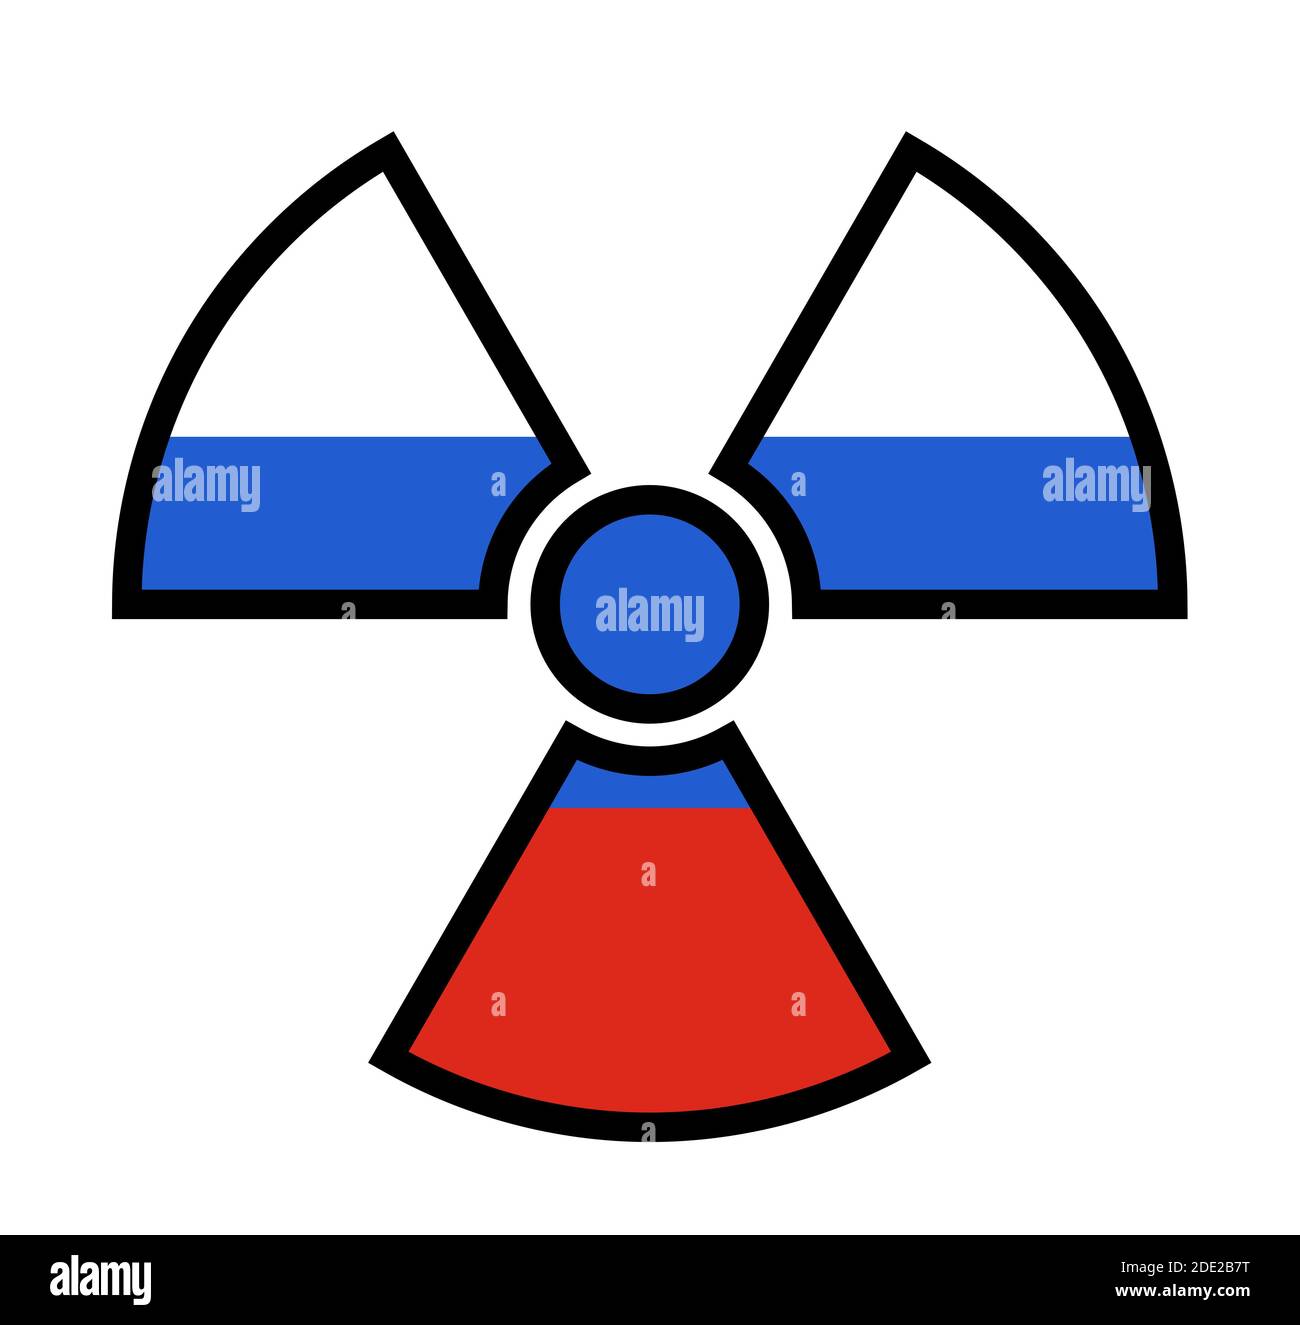 Flagge Russlands als Symbol der Strahlung - Metapher des russischen Atom- und Atomprogramms - Macht, Bomben, Waffen, Energie. Stockfoto